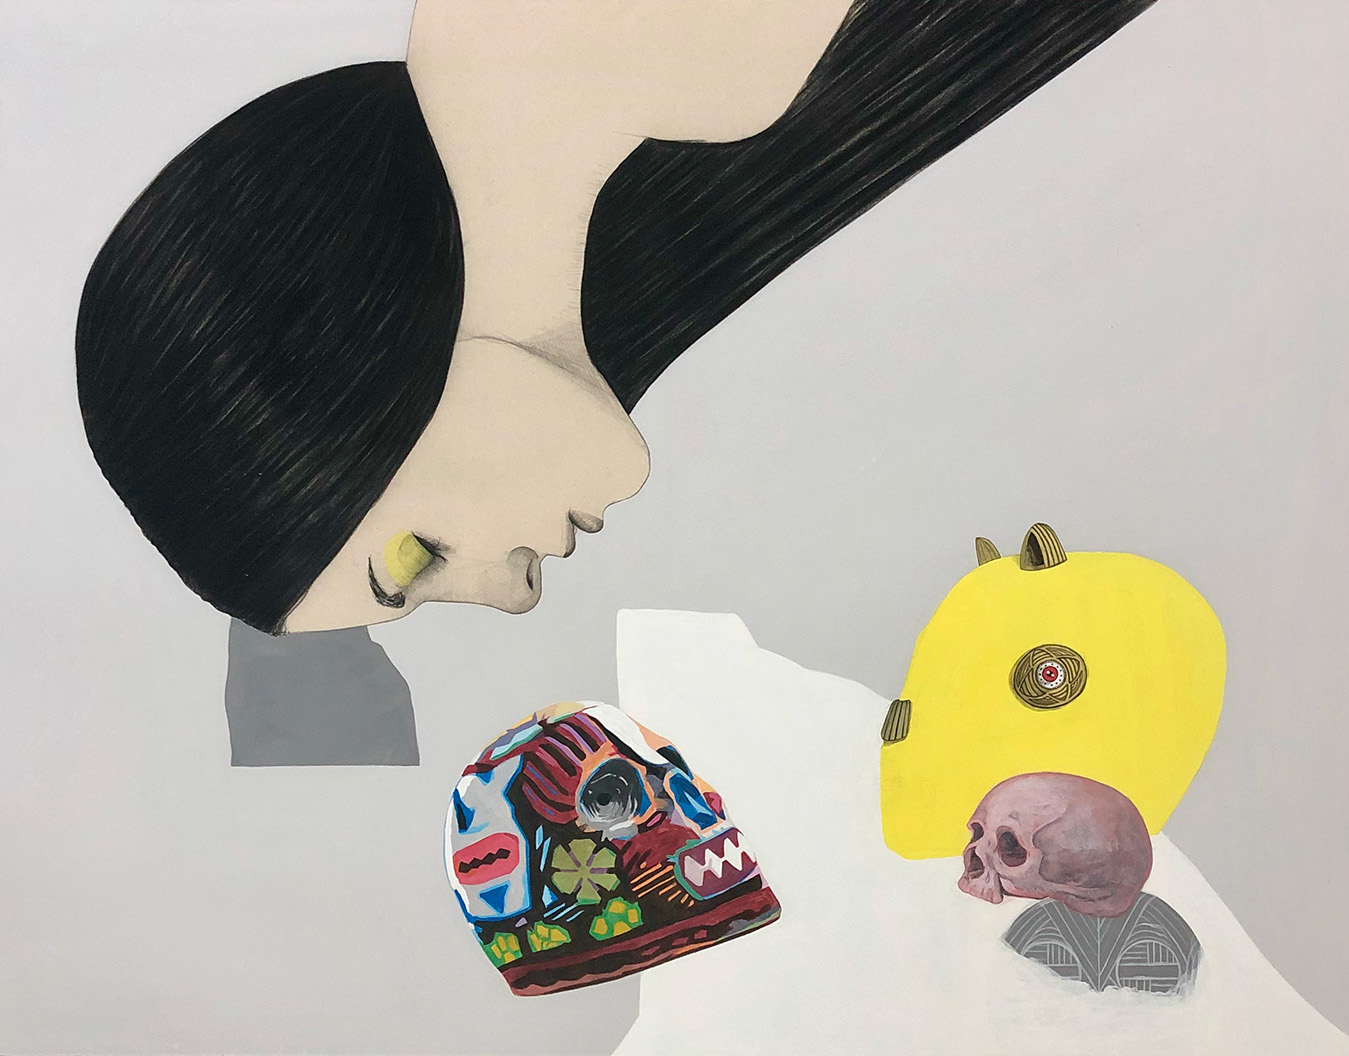 Mateo Andrea, Mascaras, mixed media on canvas, 114 x 146 cm, 2020